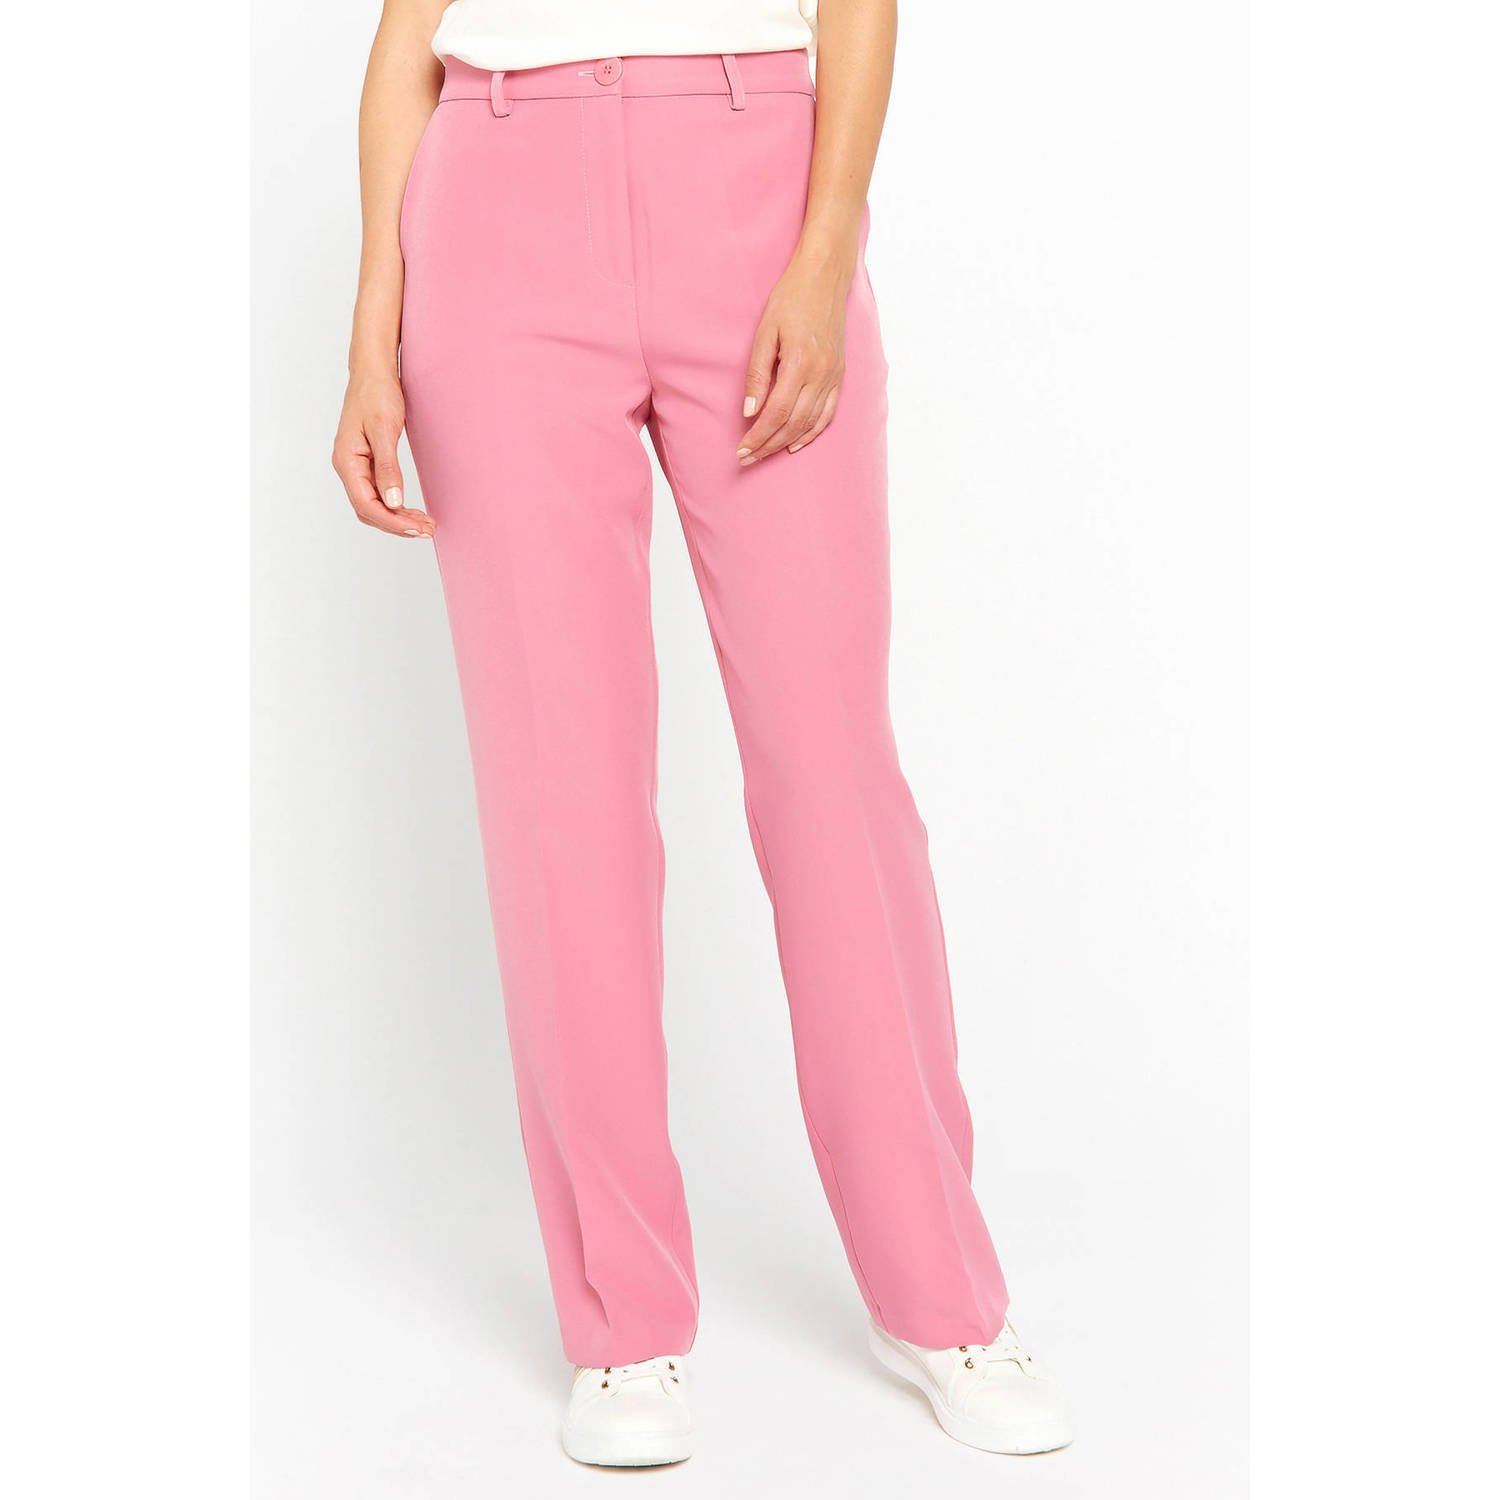 LOLALIZA high waist straight fit pantalon roze